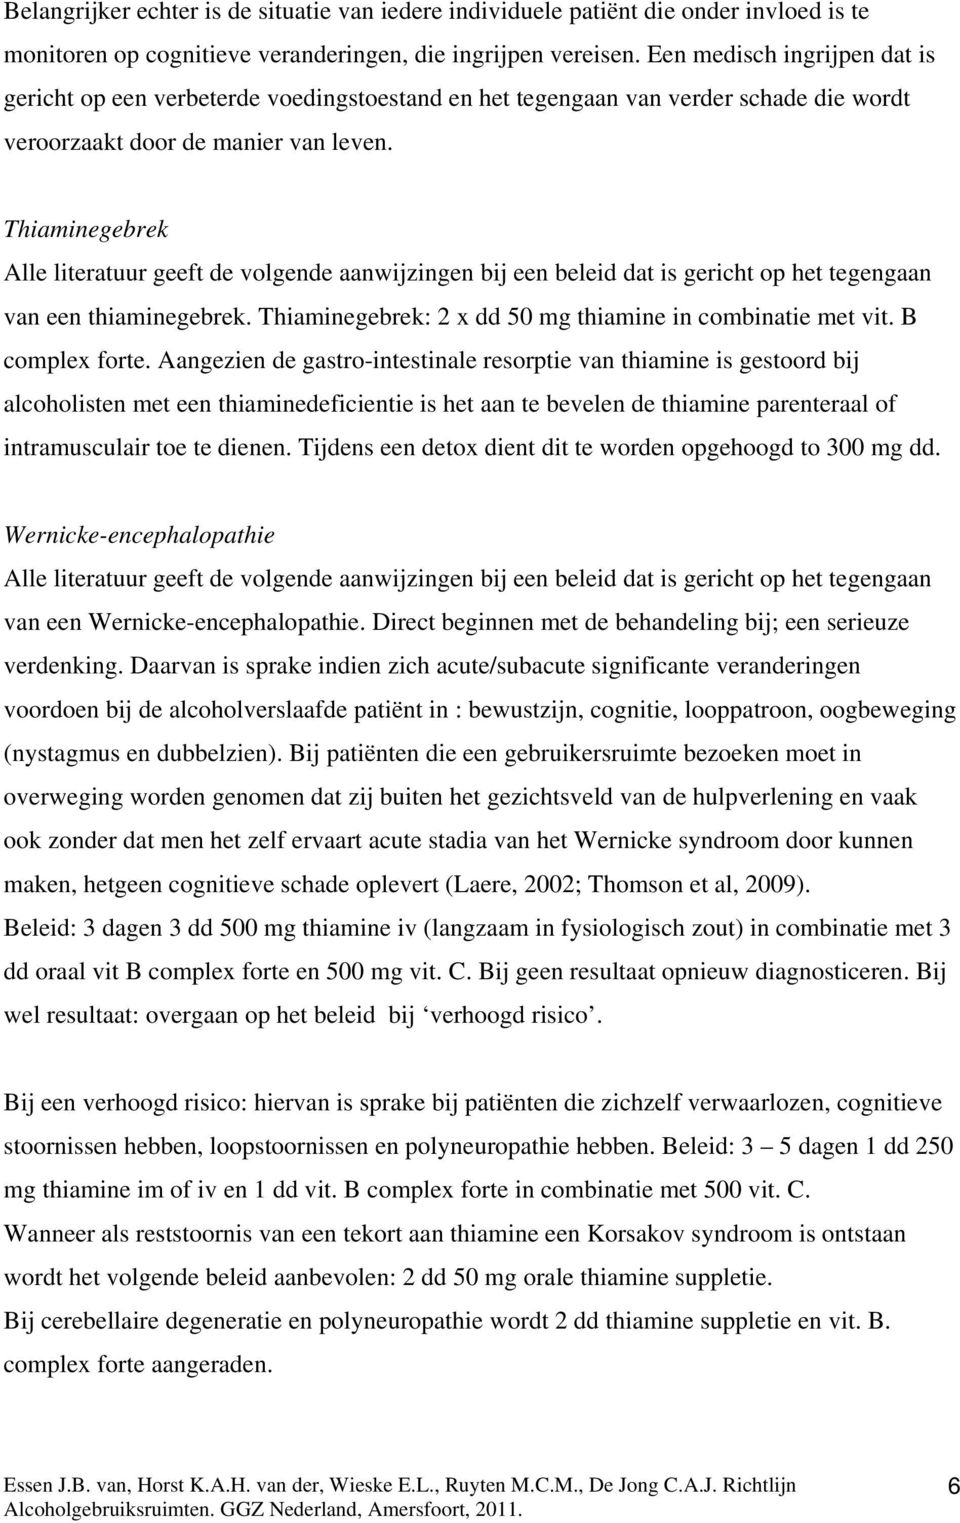 Thiaminegebrek Alle literatuur geeft de volgende aanwijzingen bij een beleid dat is gericht op het tegengaan van een thiaminegebrek. Thiaminegebrek: 2 x dd 50 mg thiamine in combinatie met vit.